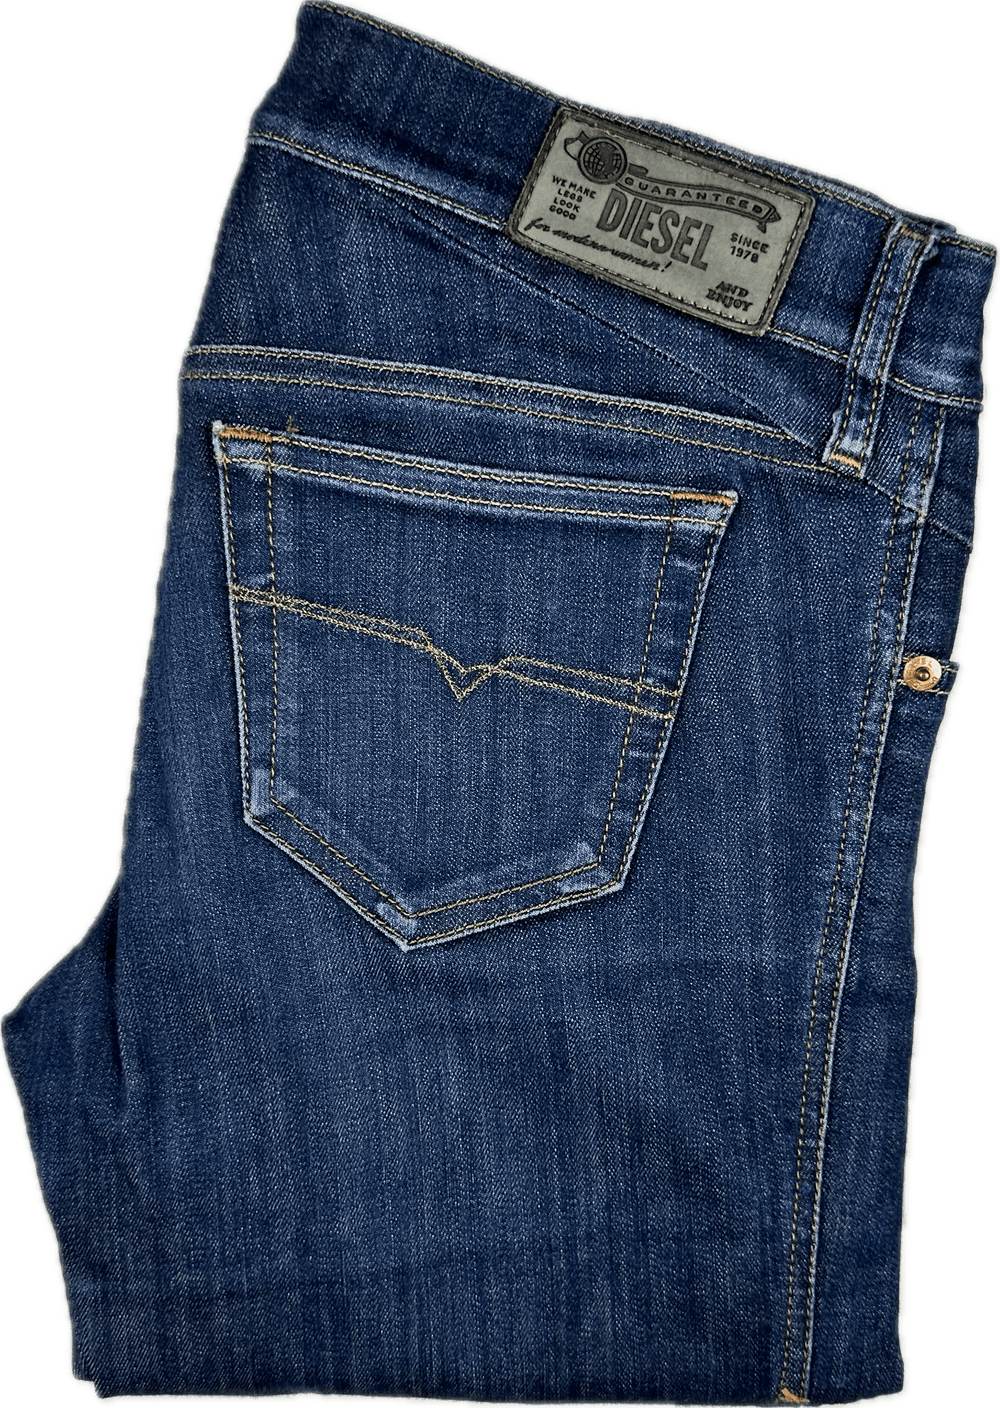 Diesel 'Getlegg' Dark Slim Skinny Jeans Size - 27/32 - Jean Pool